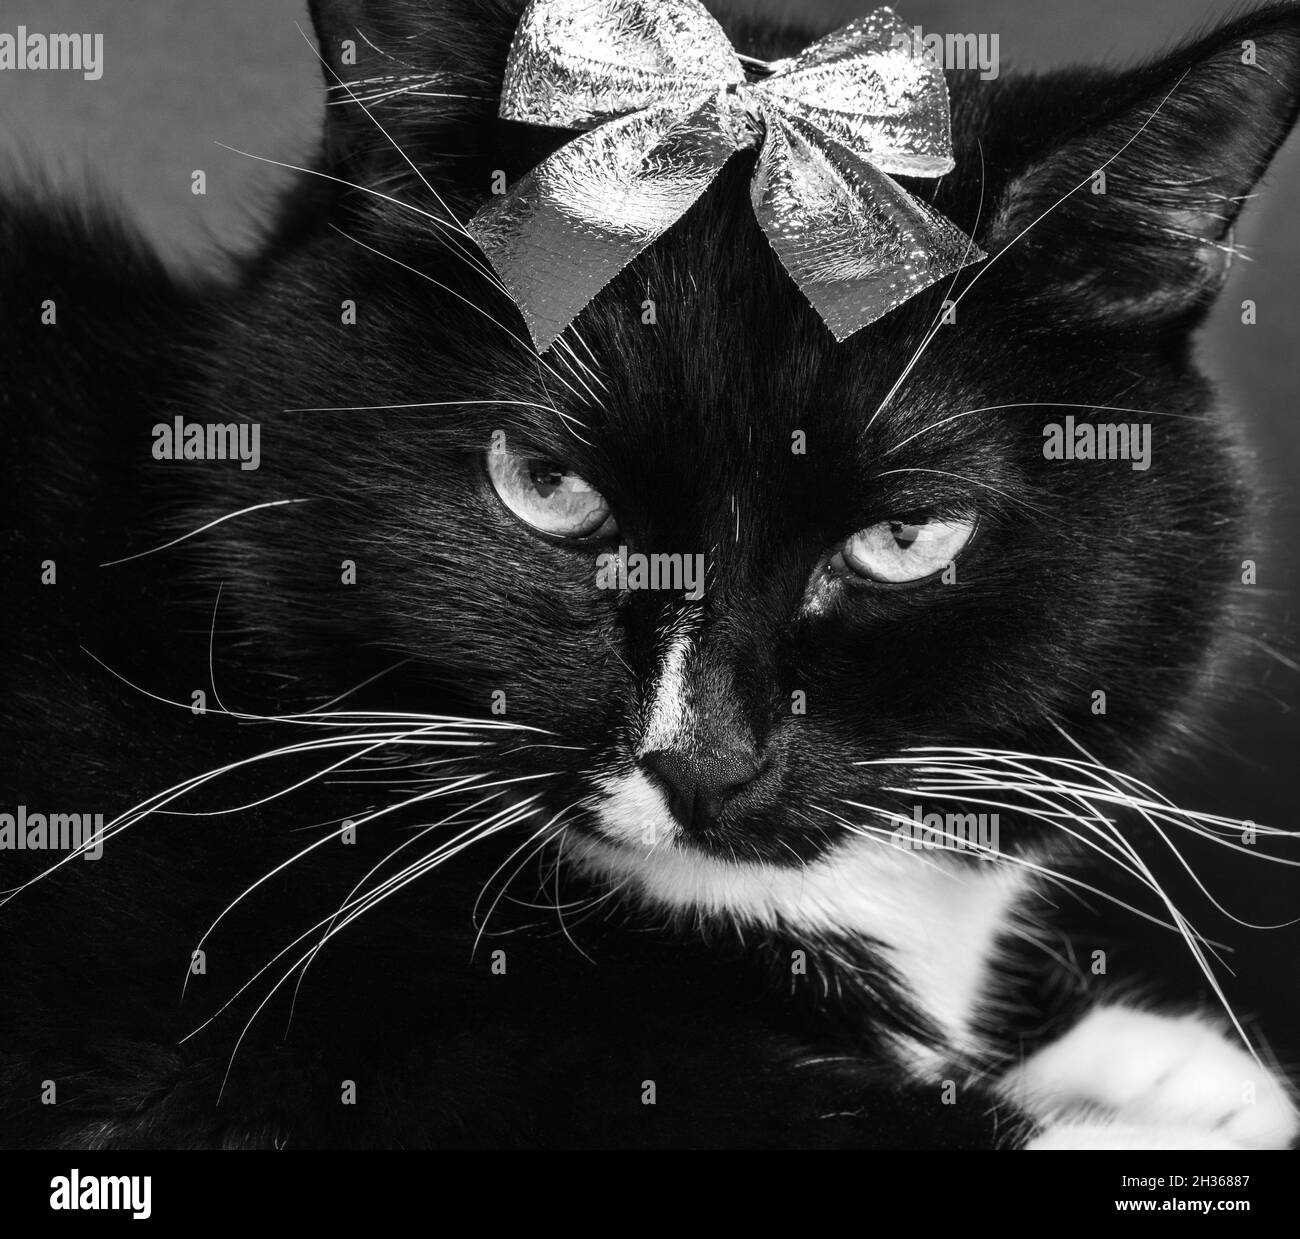 Divertente carino gatto bianco e nero serio con arco lucido sulla testa primo piano. Divertente immagine festiva. Animali domestici preferiti. Foto in bianco e nero. Foto Stock